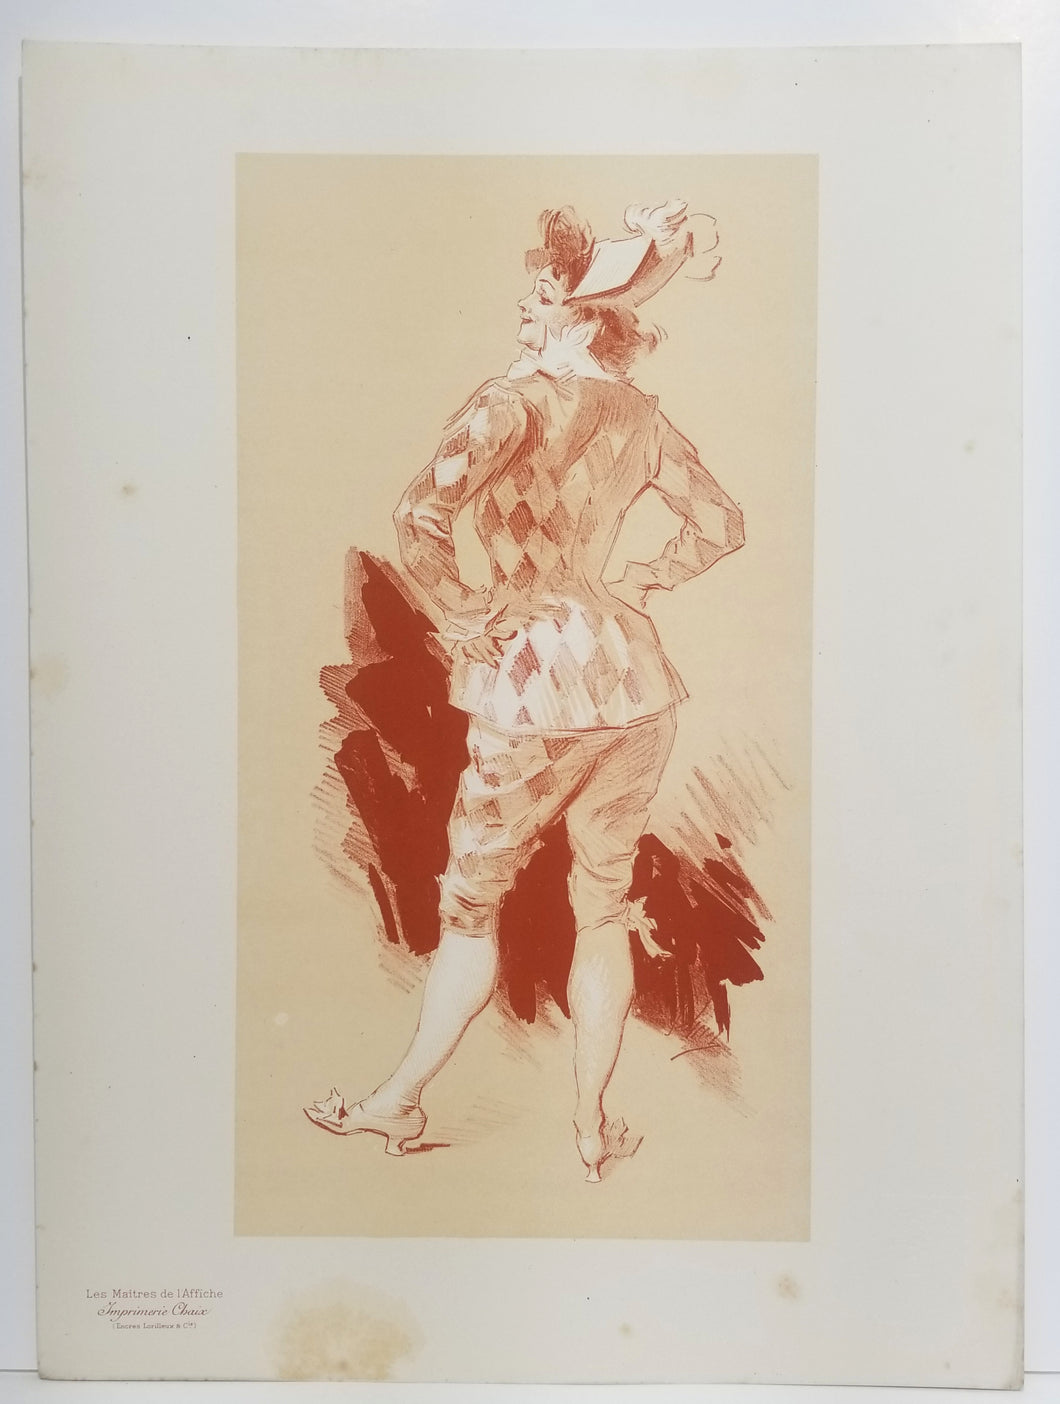 [Arlequin]. Sujet original par Chéret pour les Maîtres de l'affiche. 1897.